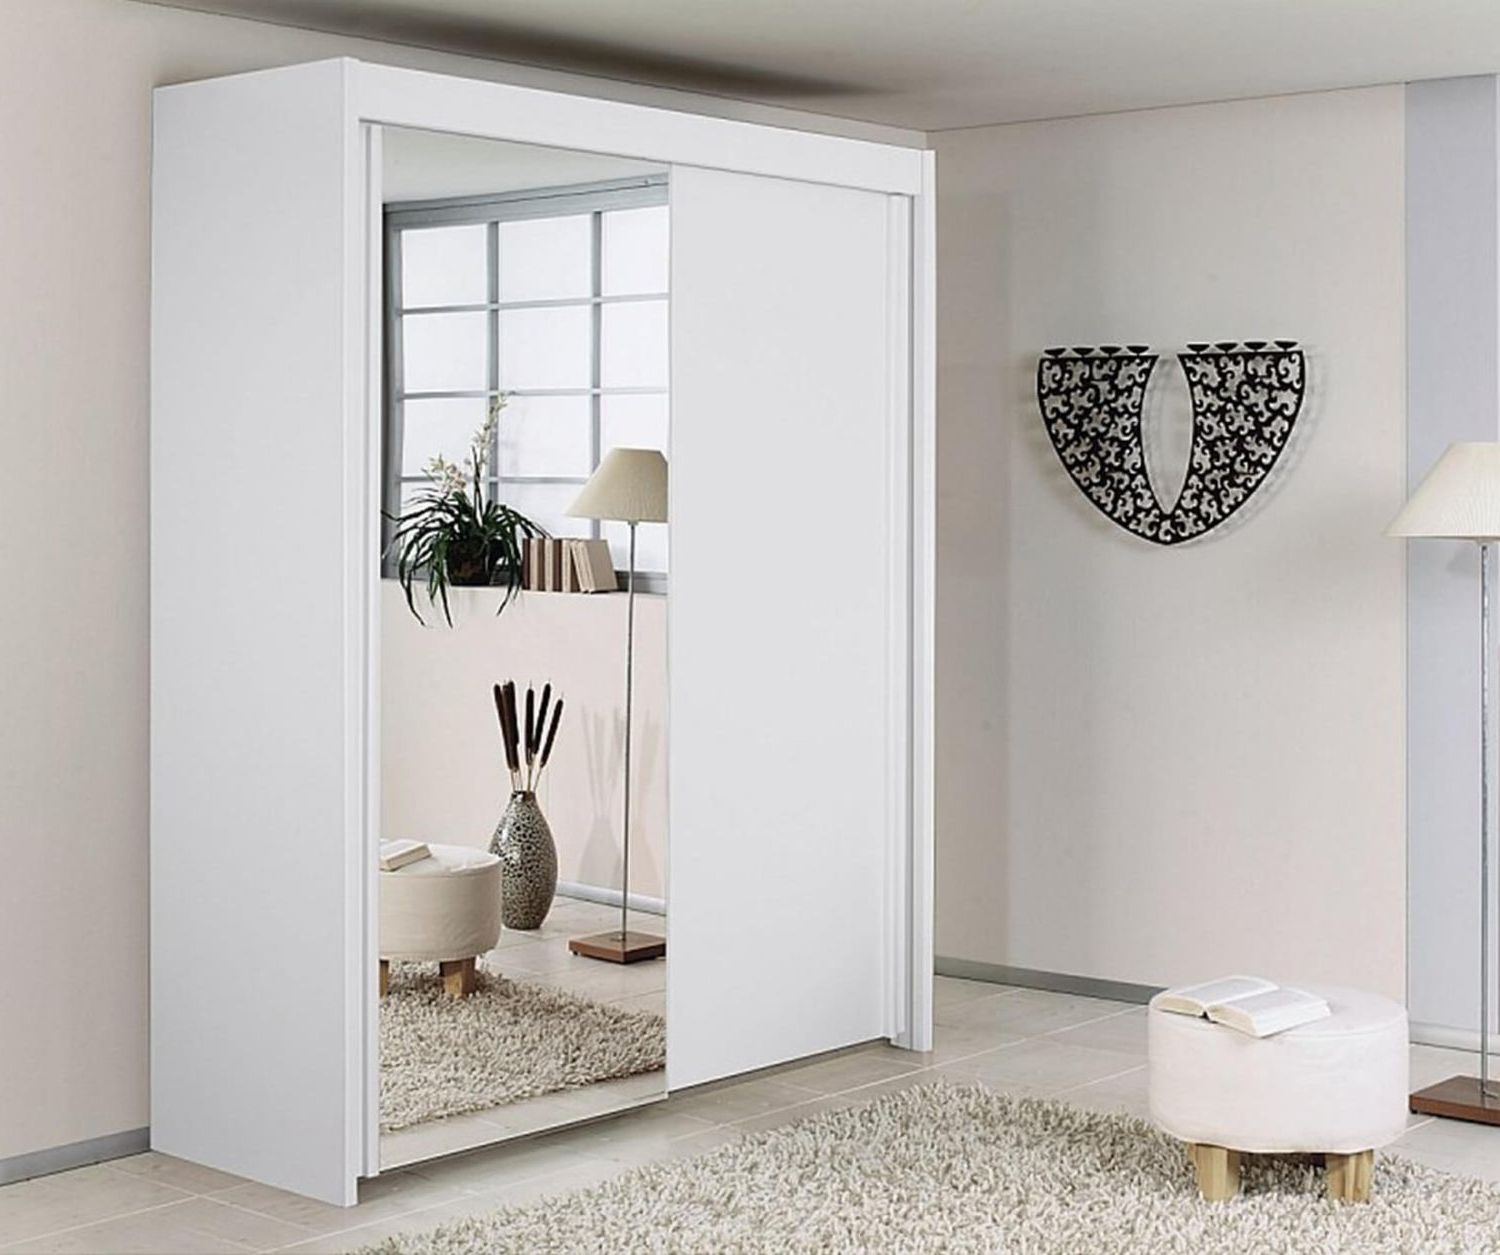 Rauch Imperial | Imperial Alpine White 2 Door Sliding Wardrobe With 1  Mirror (w181cm)| Furnituredirectuk With Regard To Rauch Imperial Wardrobes (View 2 of 20)